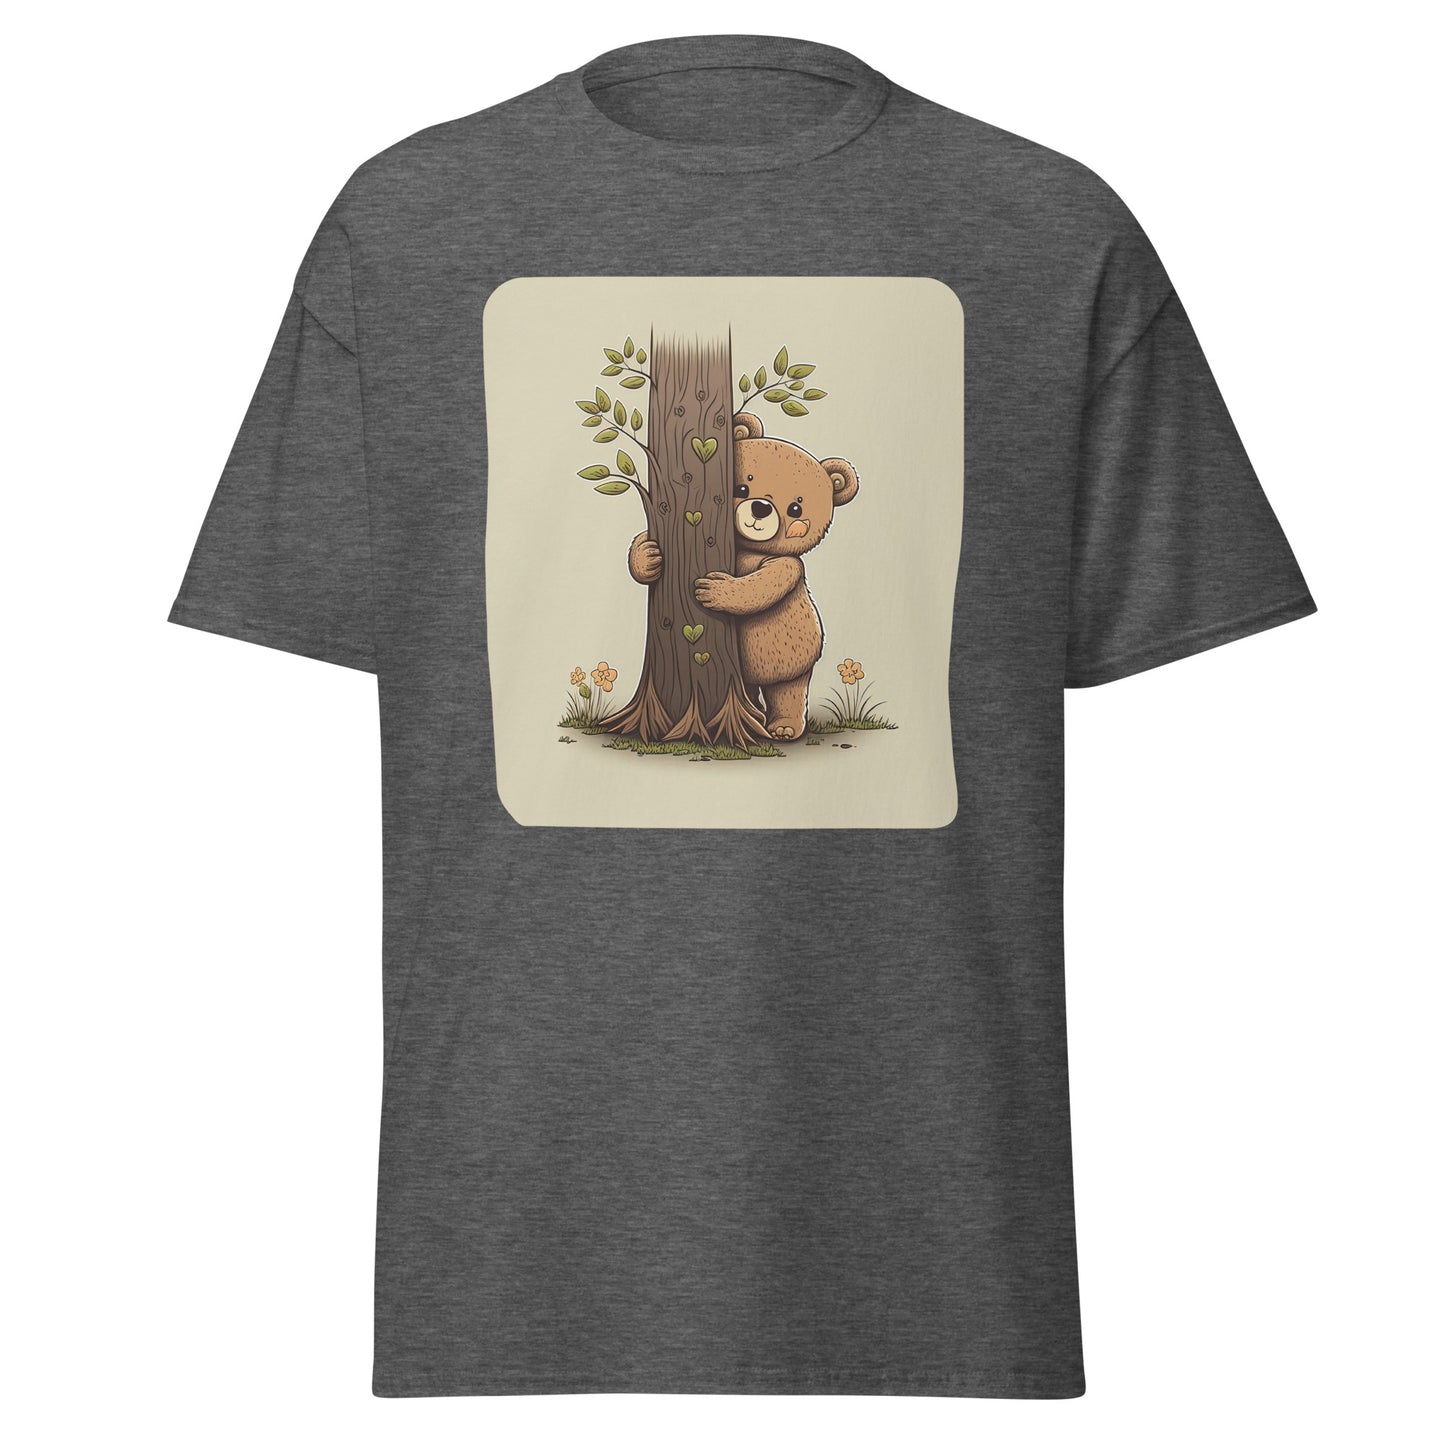 Cute Tree Hugger Teddy Bear T-Shirt